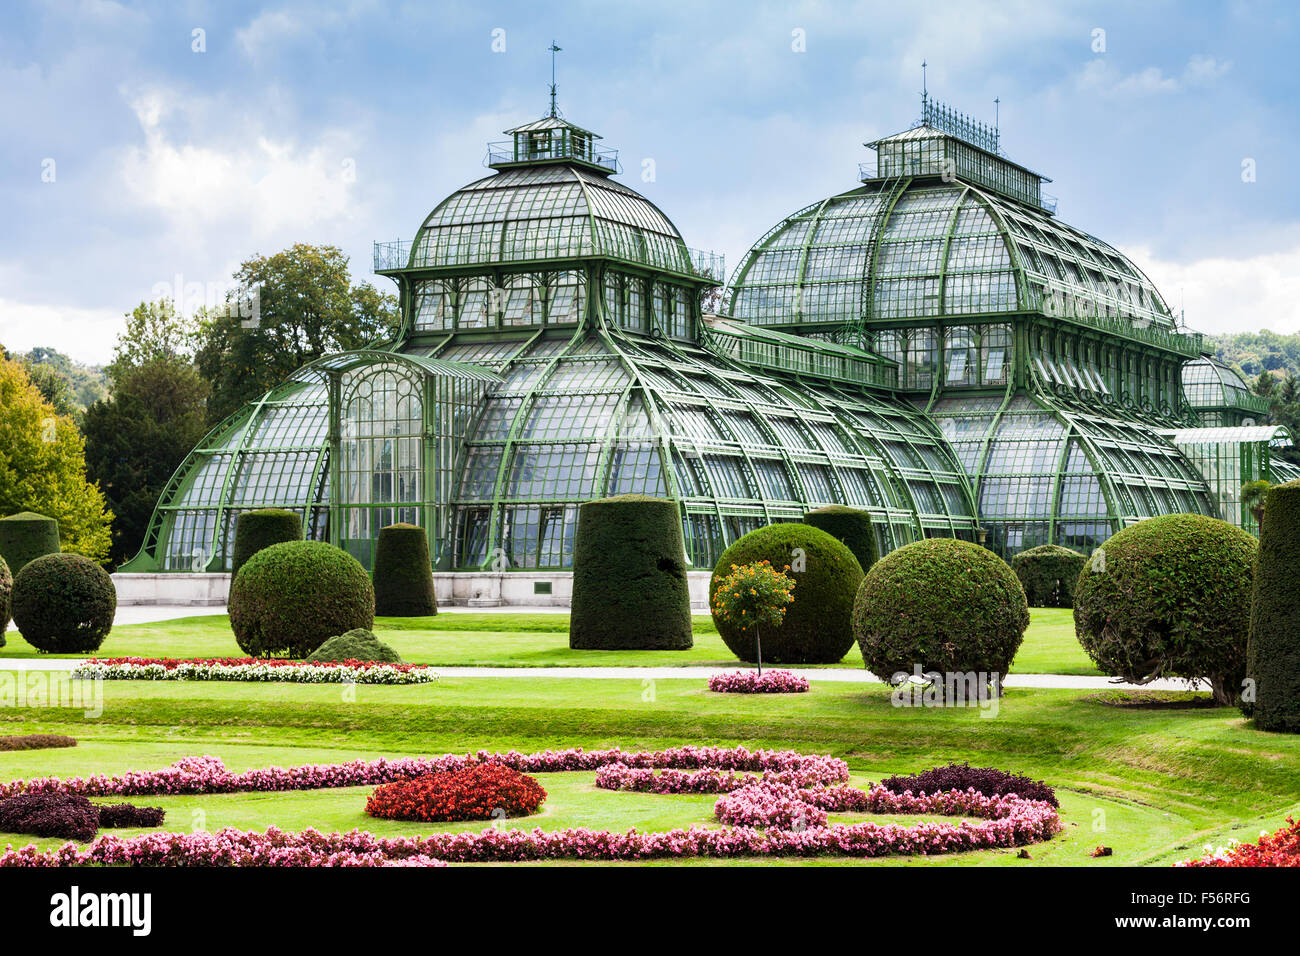 Viaggiare per la città di Vienna - la Casa delle Palme, grande serra in giardino di Schloss Schonbrunn Palace, Vienna, Austria Foto Stock